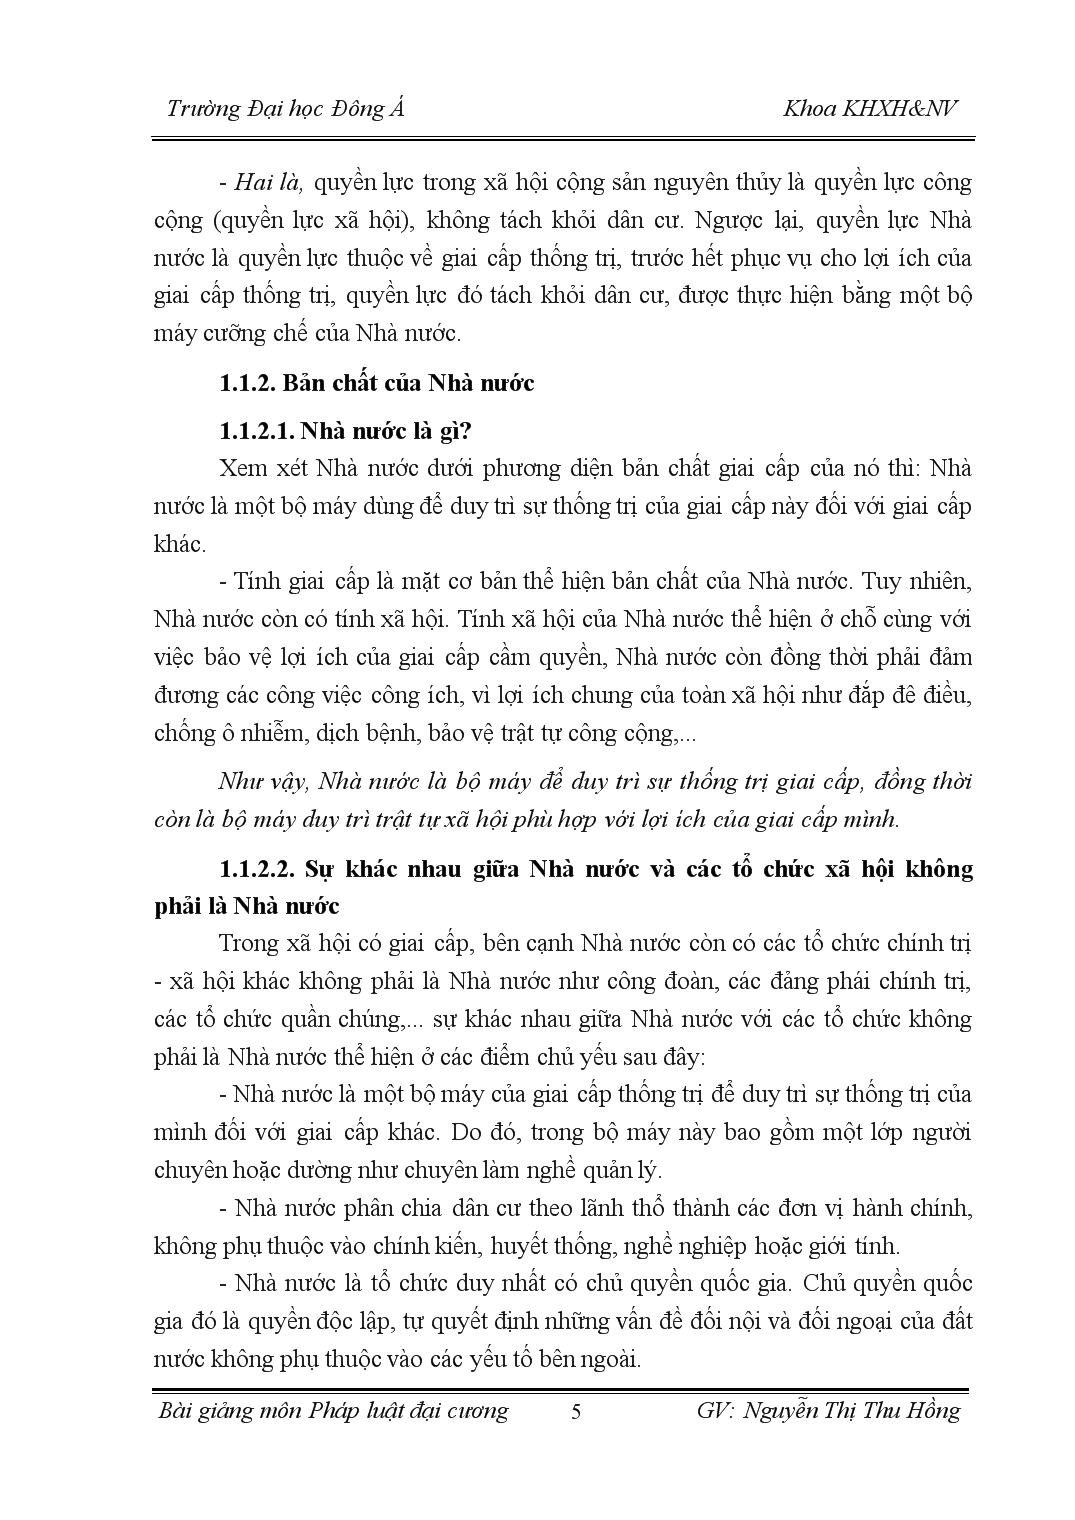 Bài giảng pháp luật đại cương - Nguyễn Thị Thu Hồng trang 5